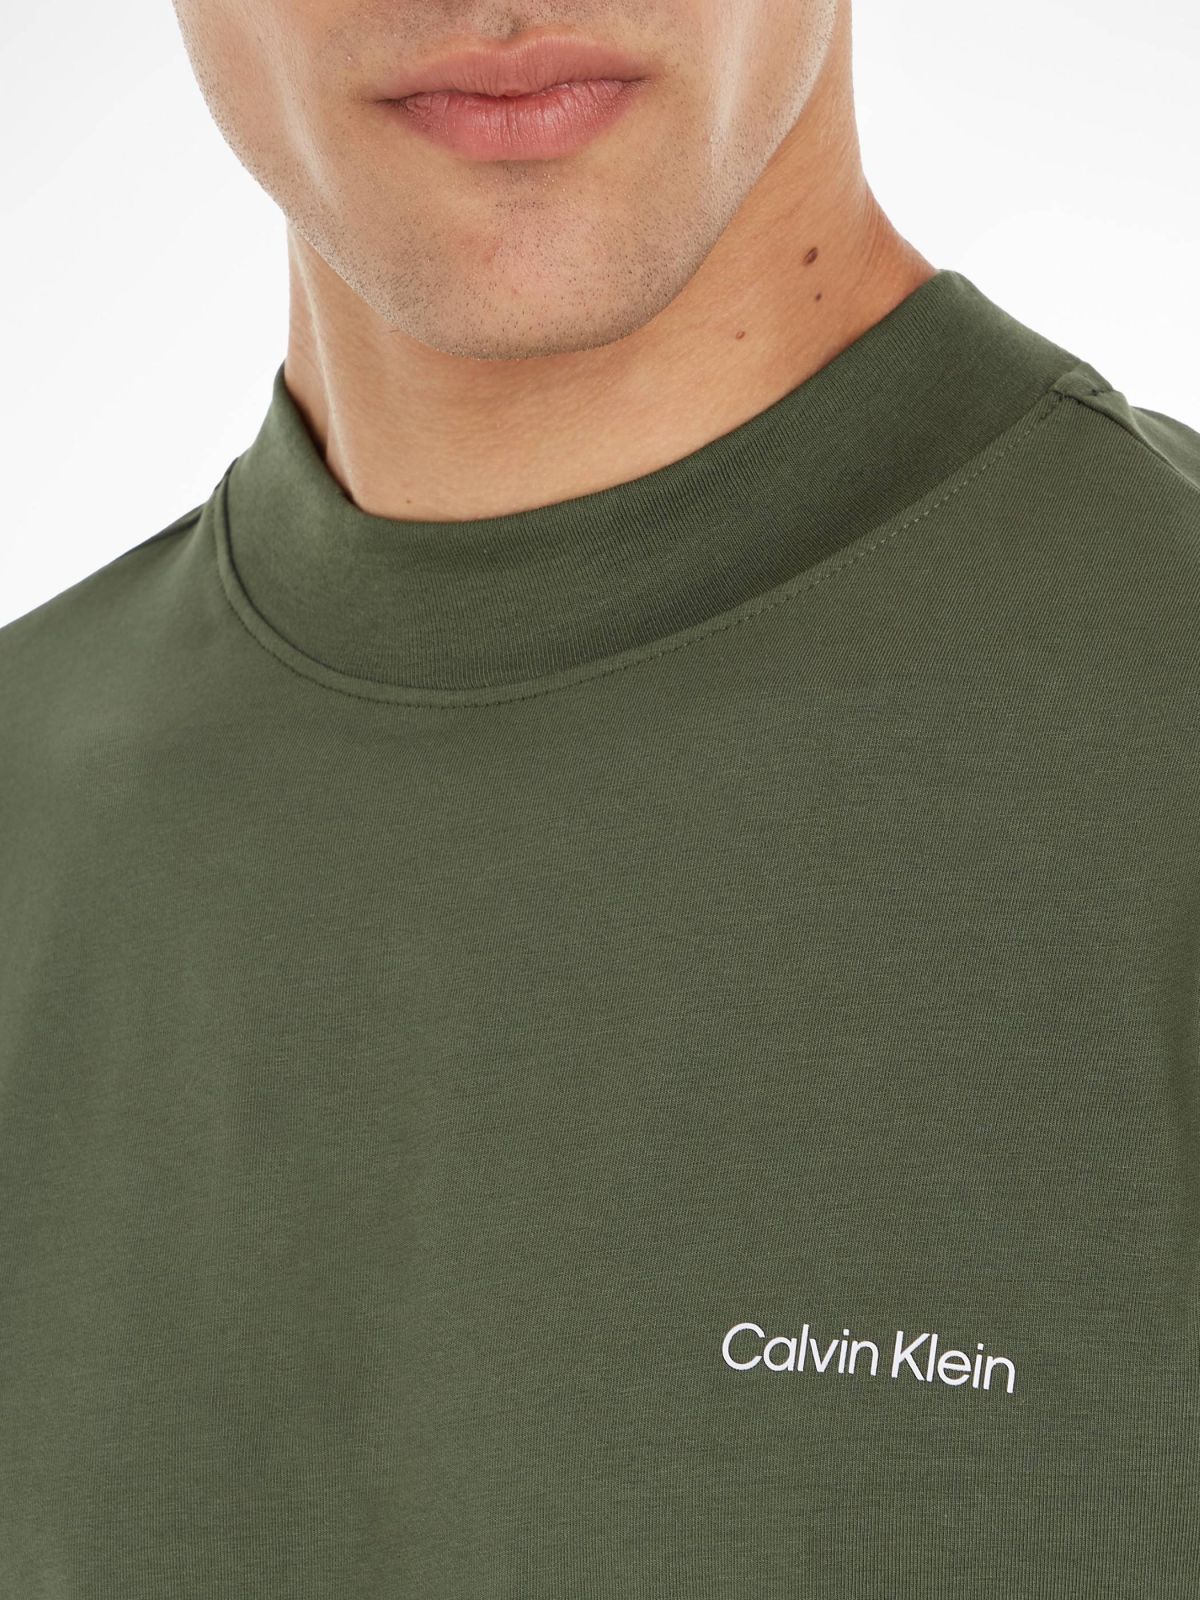  חולצת טי שירט עם לוגו של CALVIN KLEIN